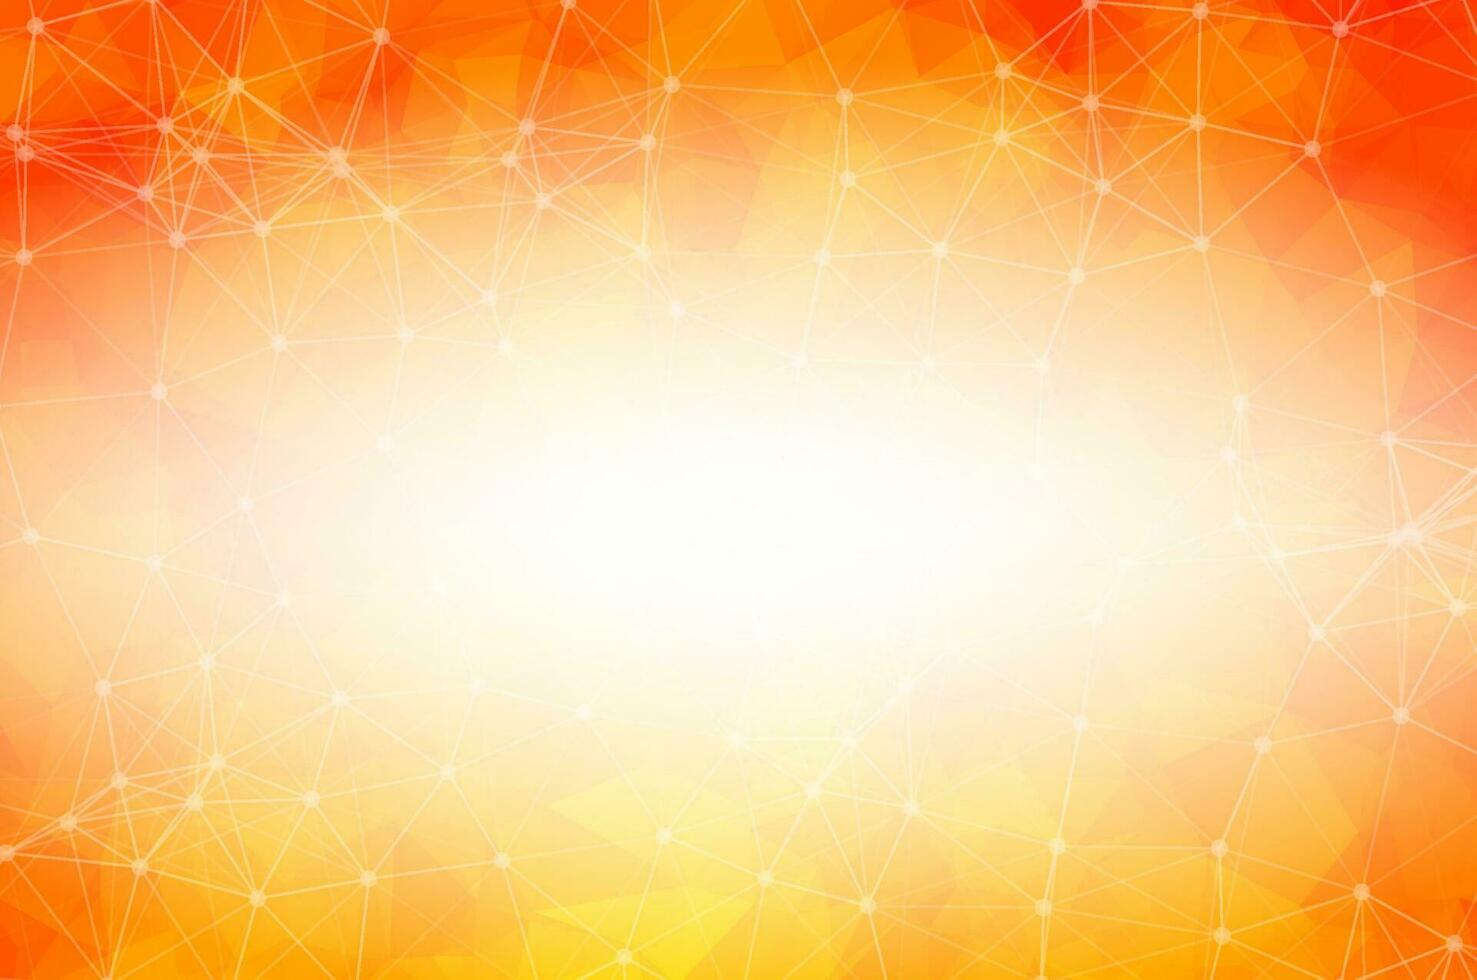 molécula de fondo poligonal naranja geométrica y comunicación. líneas conectadas con puntos. fondo de minimalismo. concepto de ciencia, química, biología, medicina, tecnología. vector